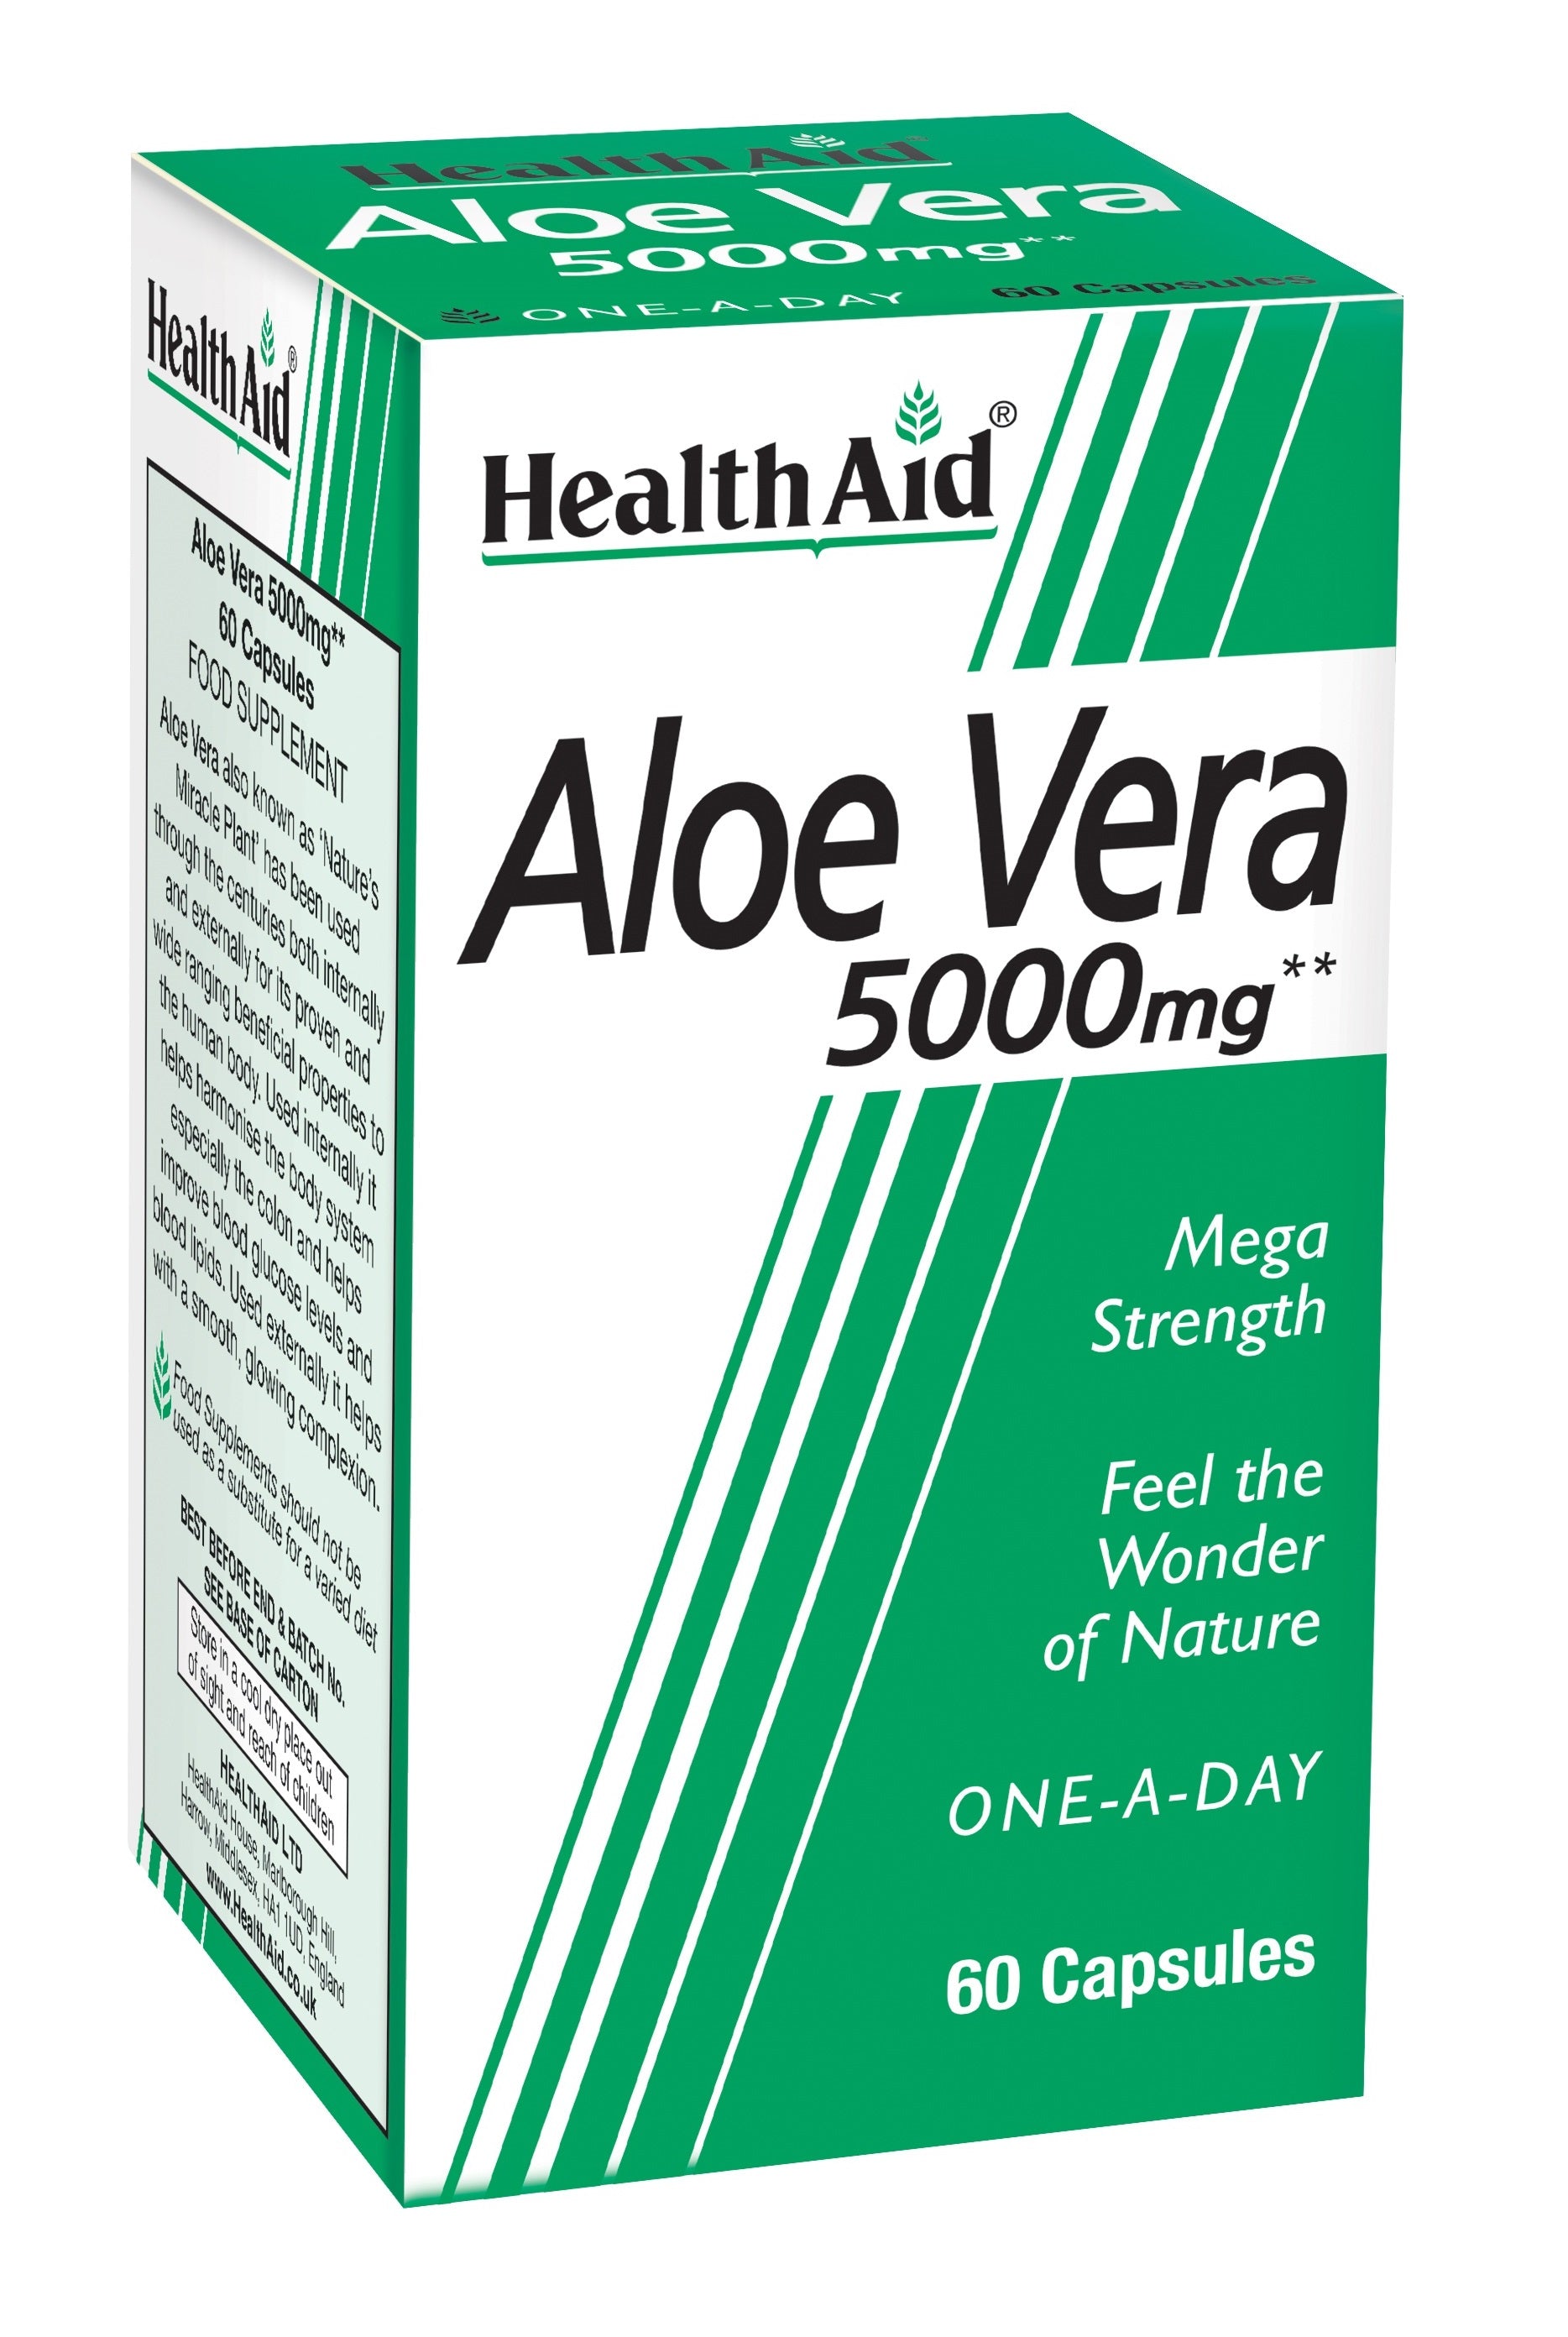 Health Aid Aloe Vera 5000mg